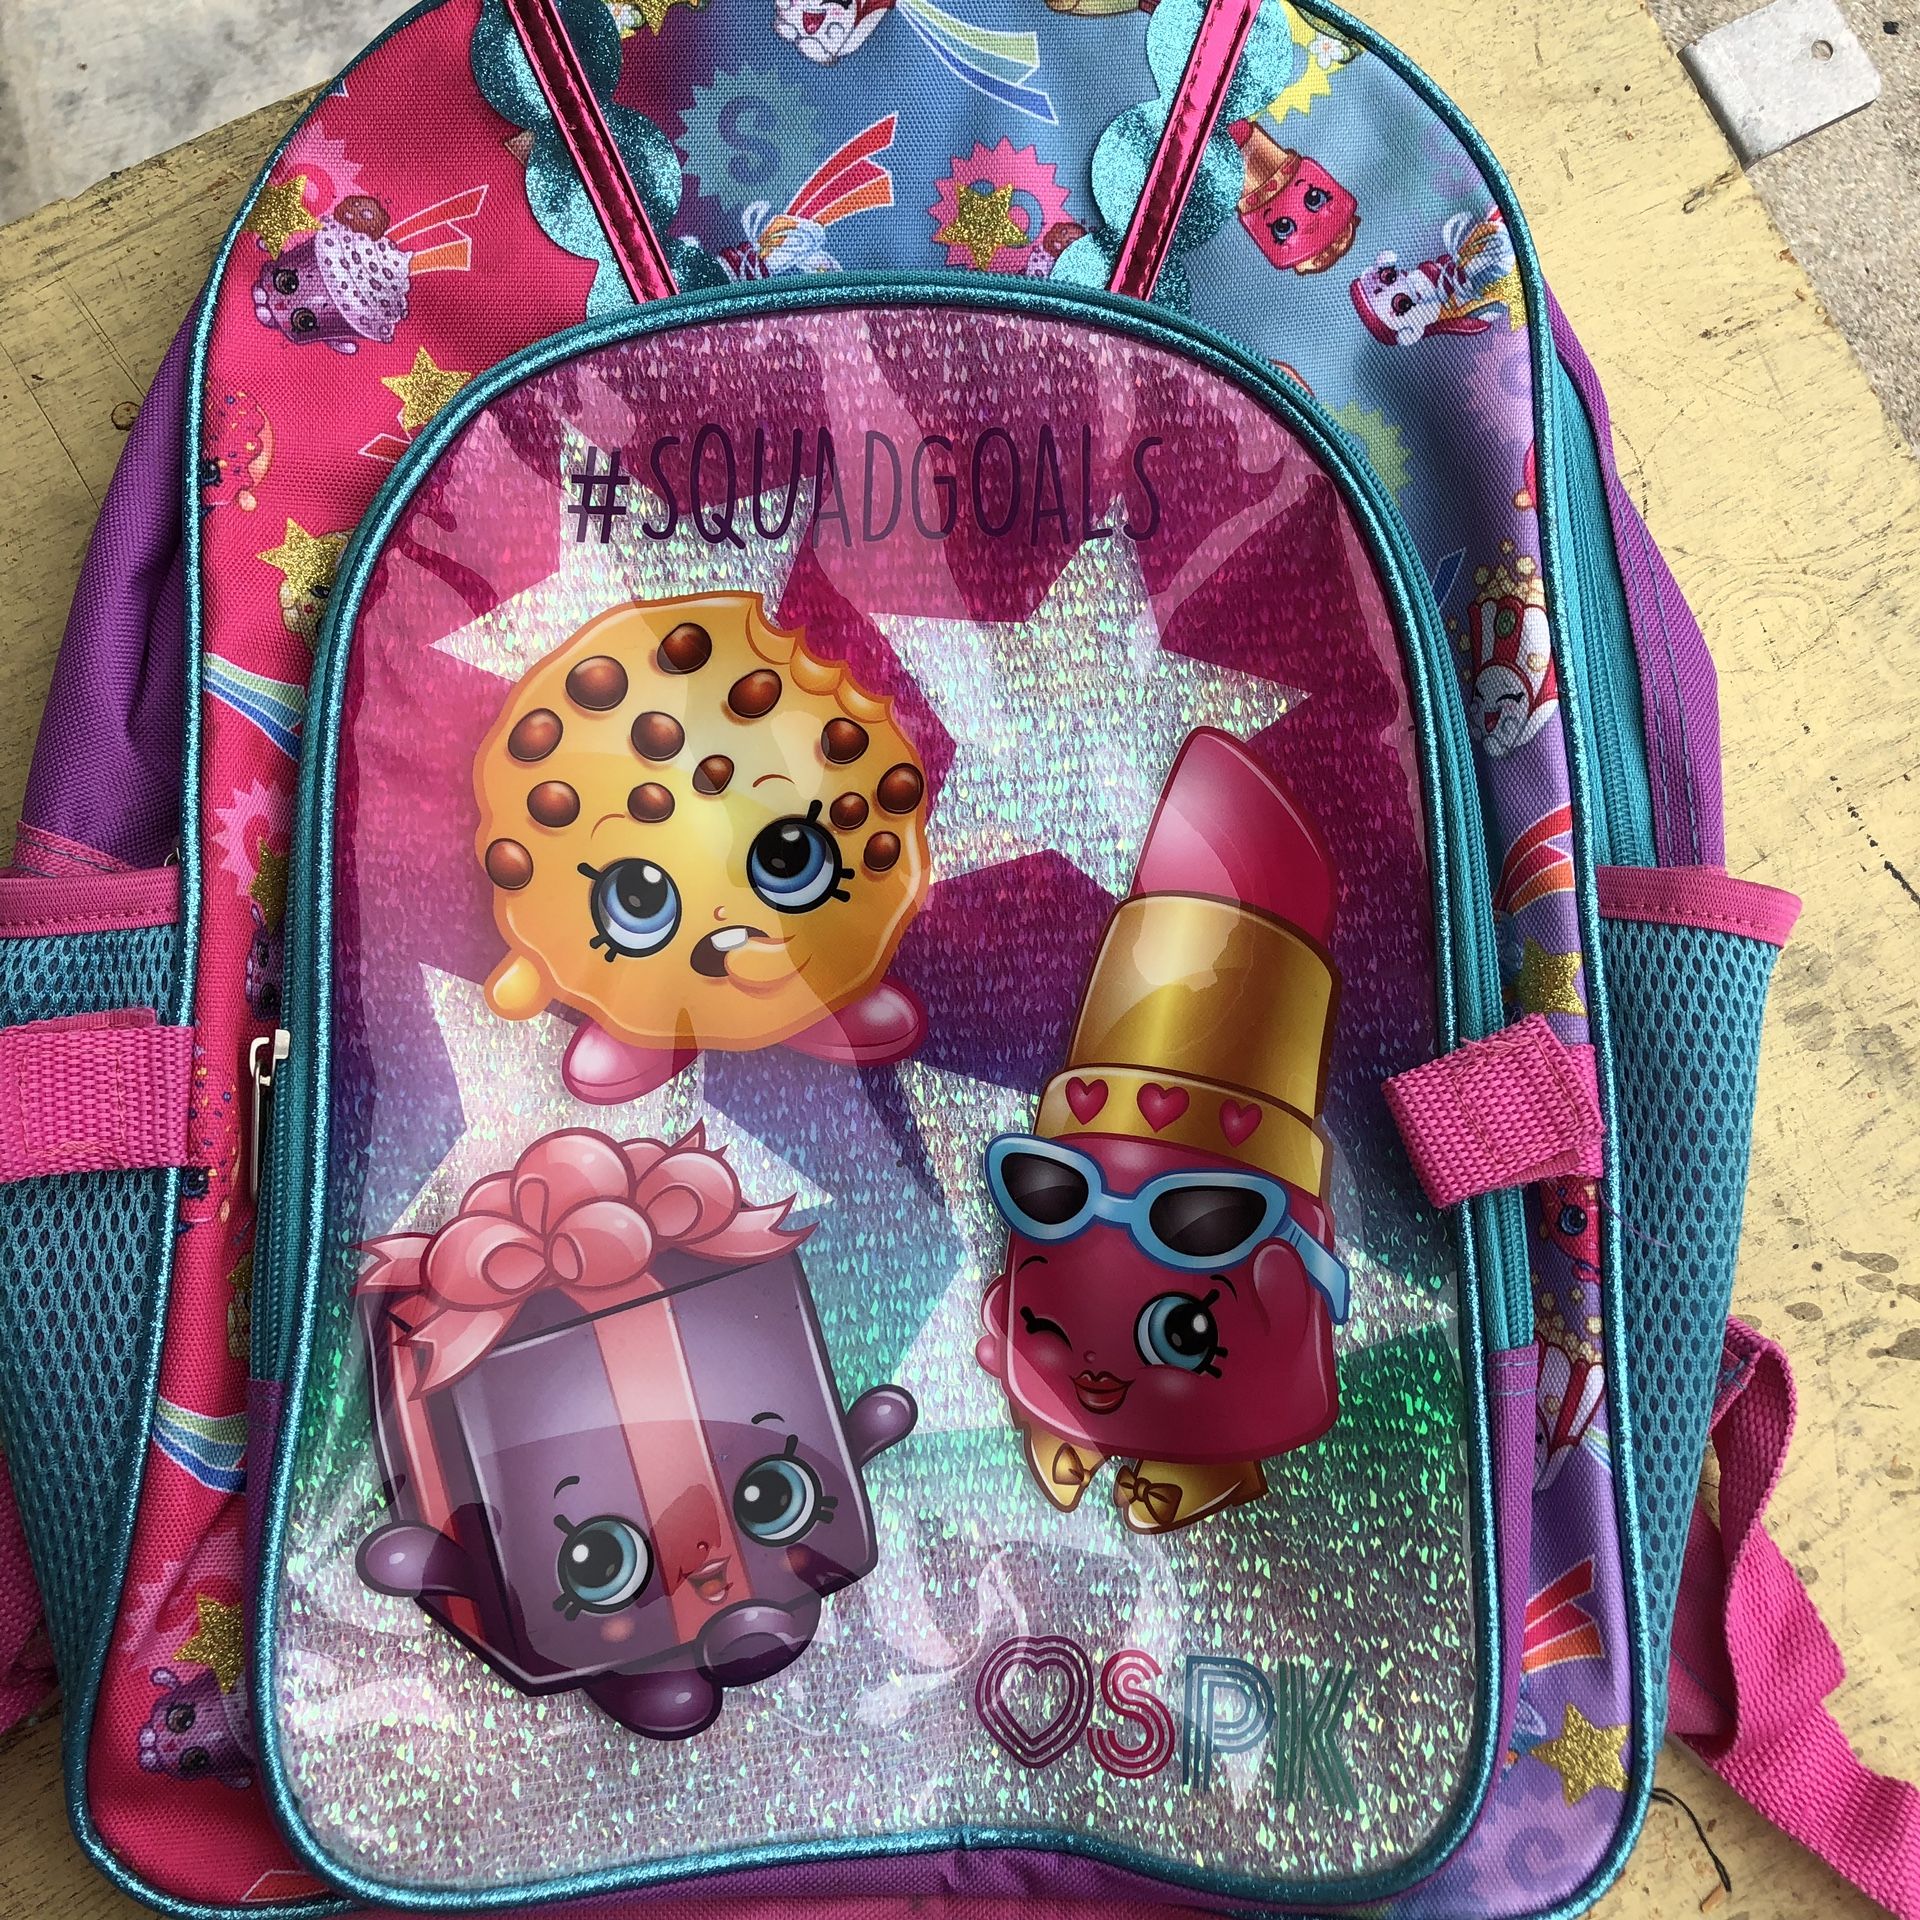 Shopkins backpack